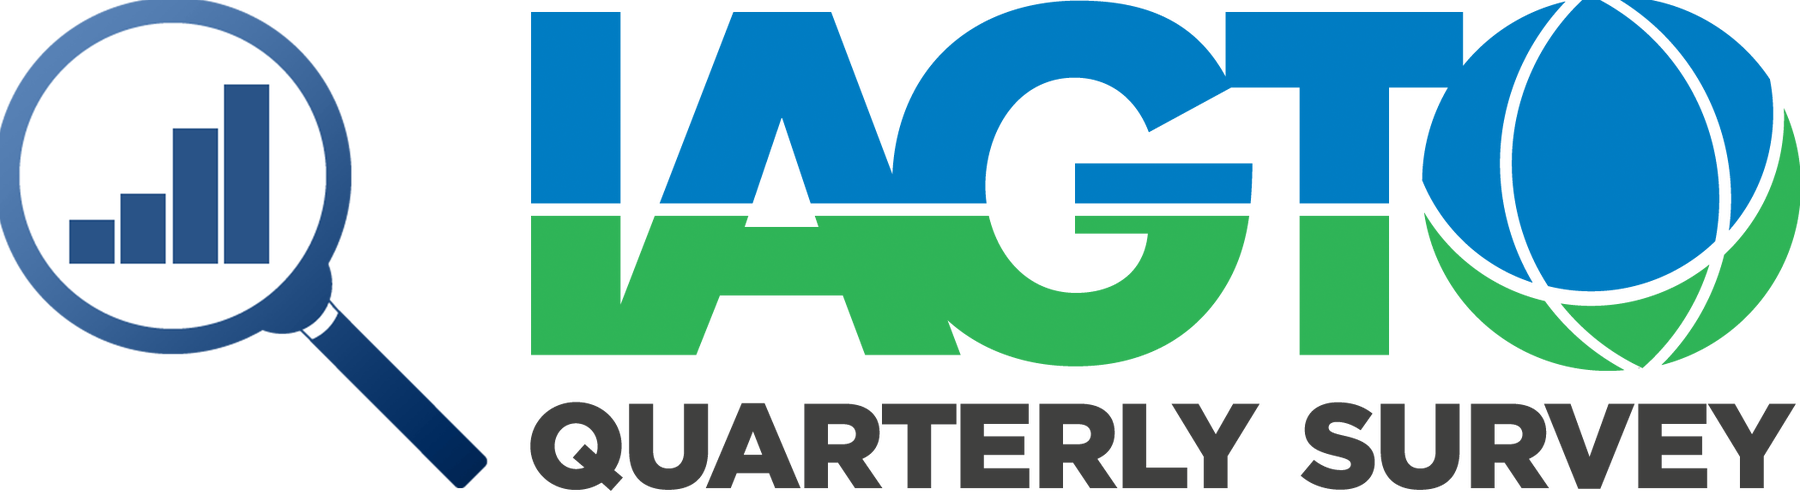 IAGTO Logocrop – Quarterly Survey-FINAL